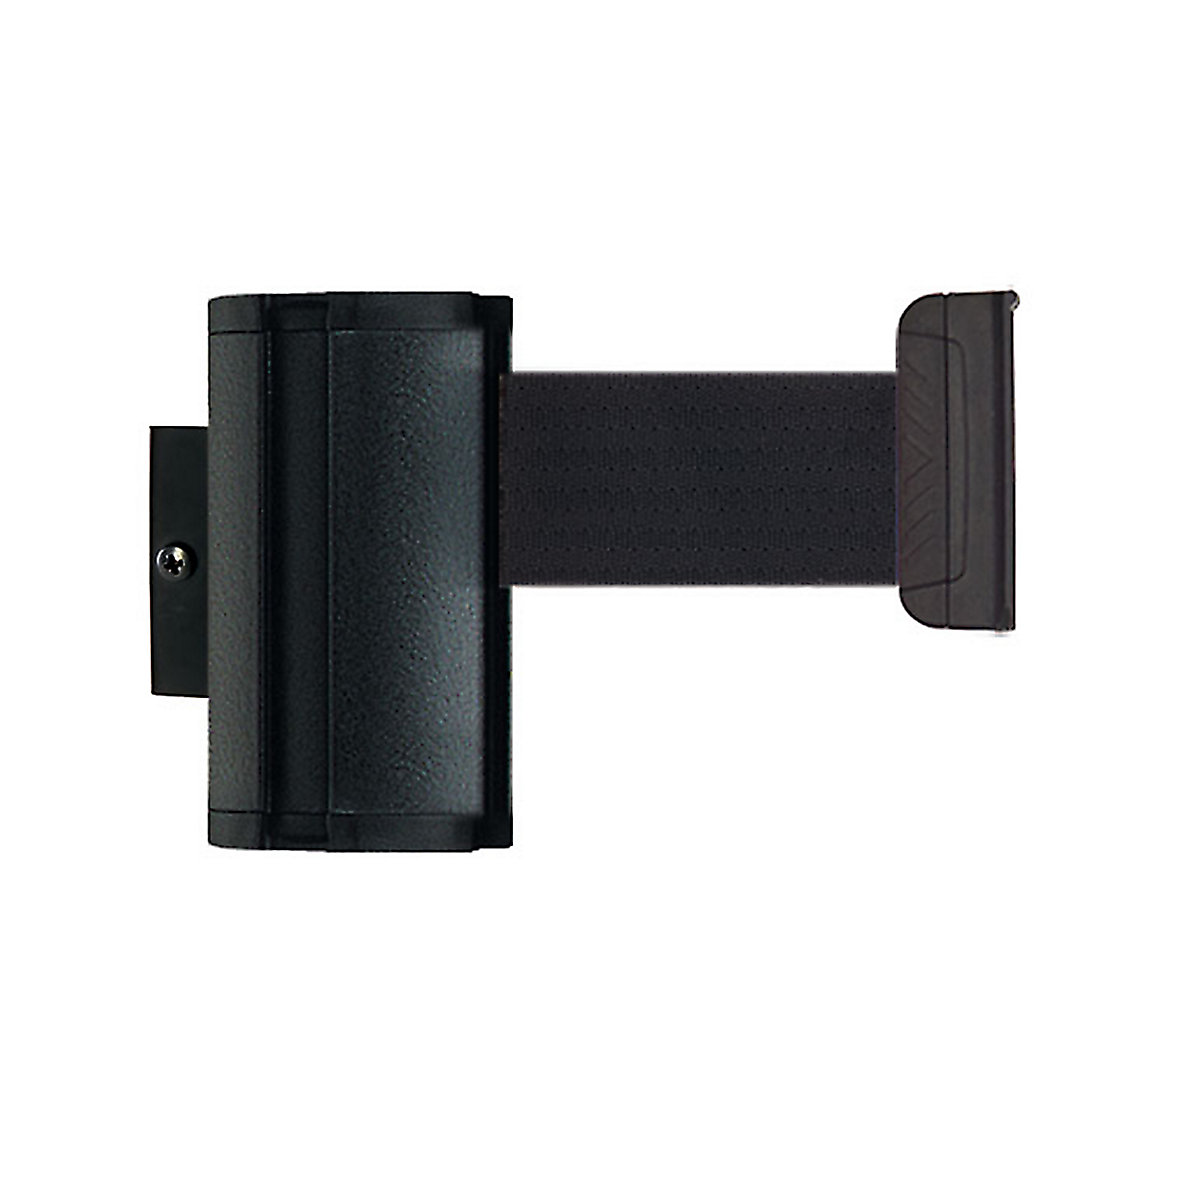 Cassete de cinta Wall Mount, extração máx. da cinta 2300 mm, cor da cinta preto-6